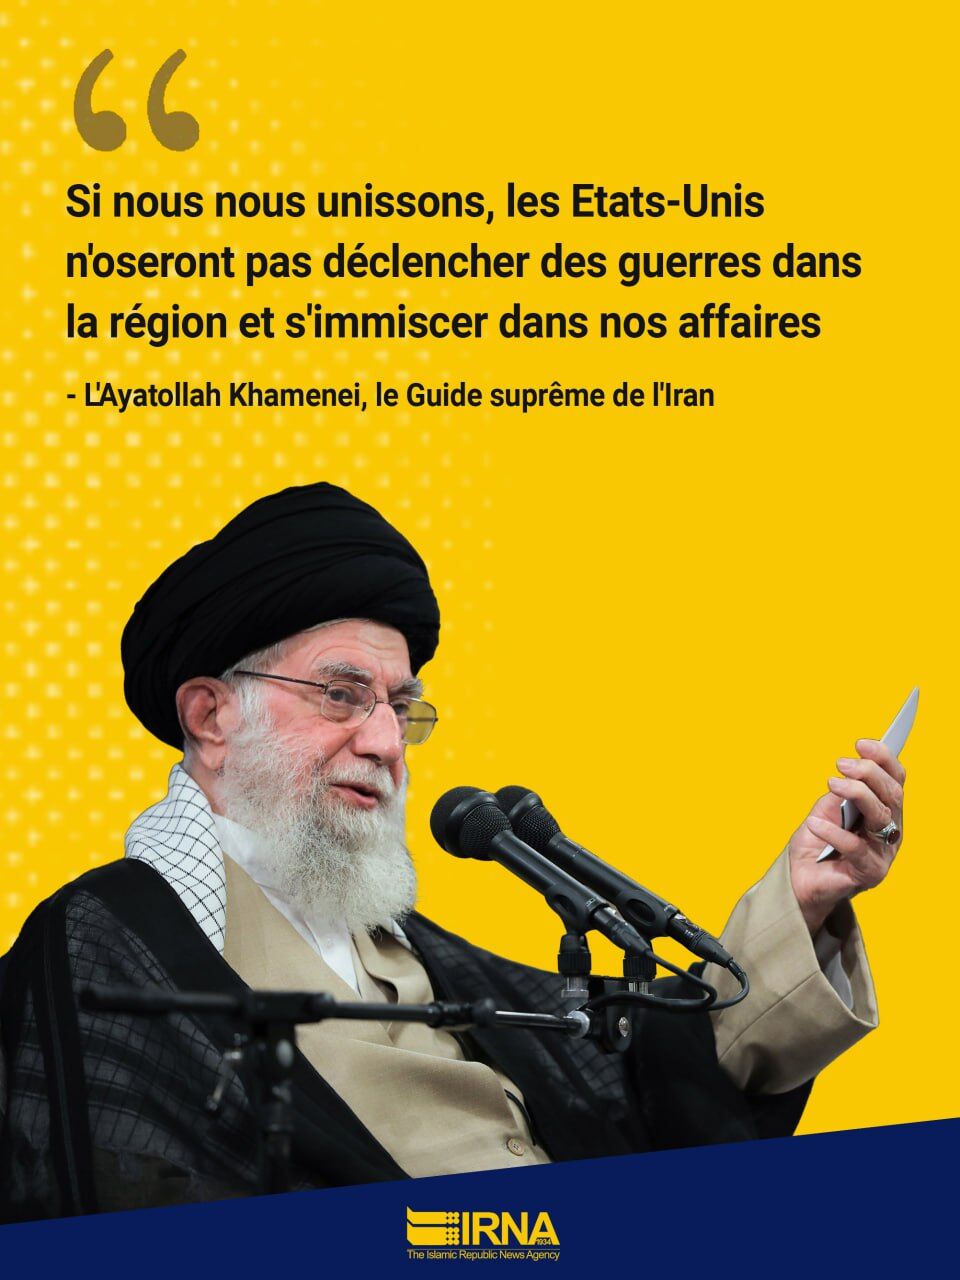 L’unité est un moyen de dissuasion contre l’intimidation américaine (l'ayatollah Khamenei)